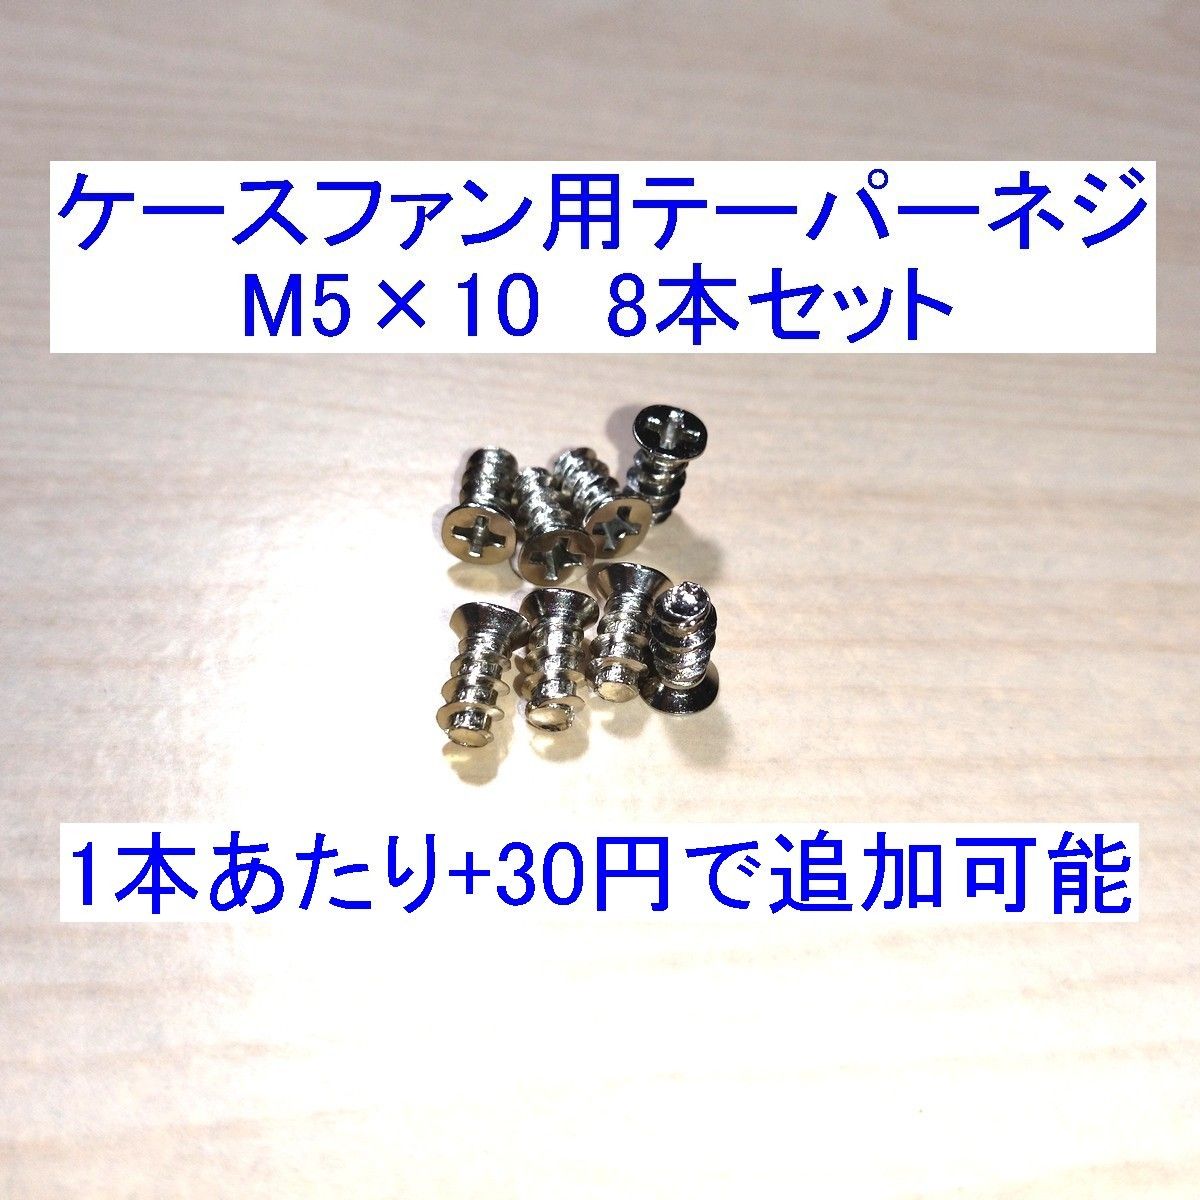 ケースファン用テーパーネジ/タッピングネジ M5×10mm 8本セット 新品